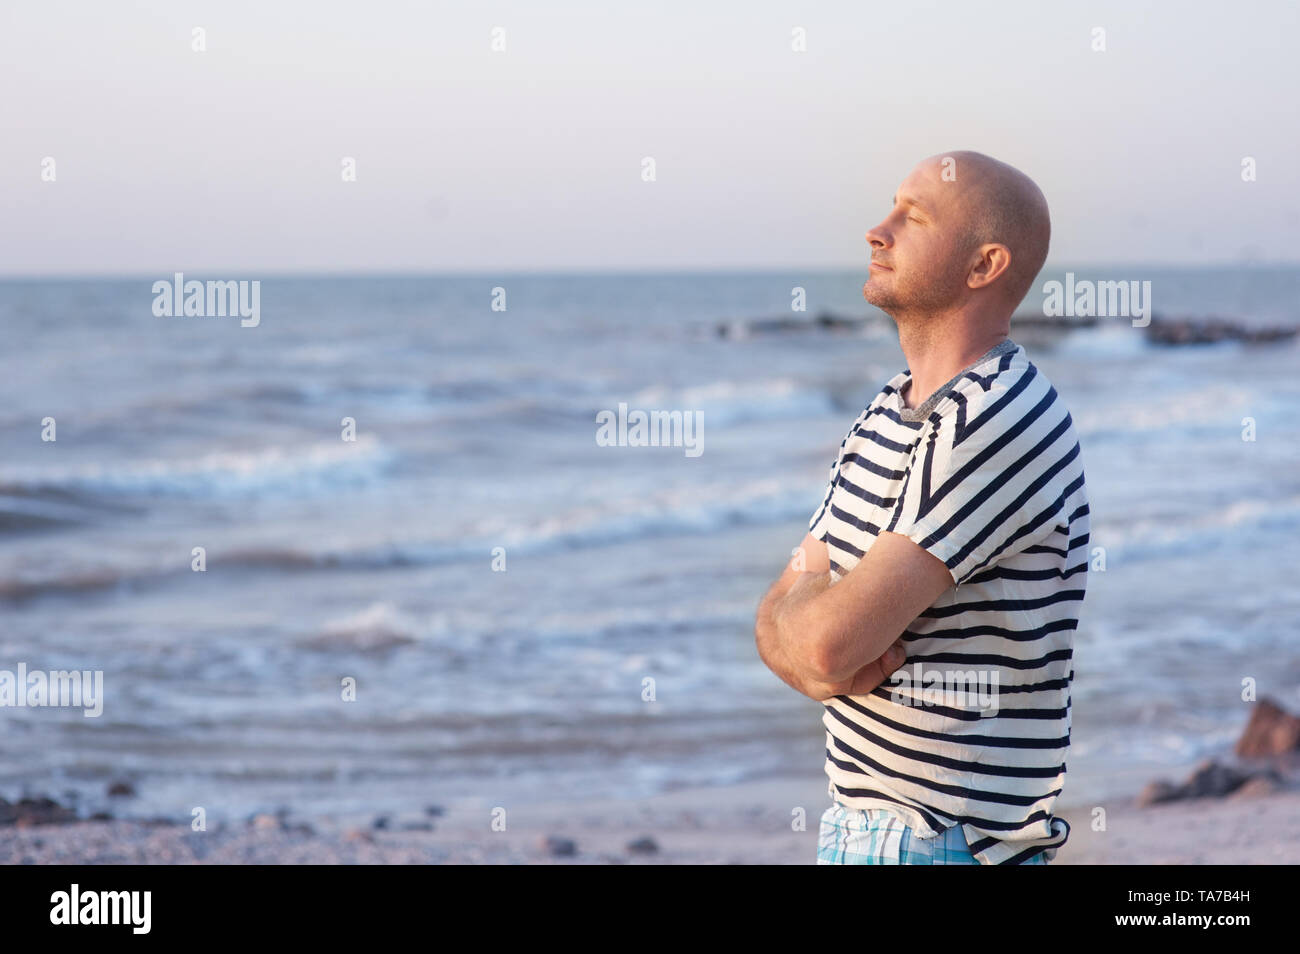 Beau homme portant un t-shirt rayé respirant devant l'océan sur la plage Banque D'Images